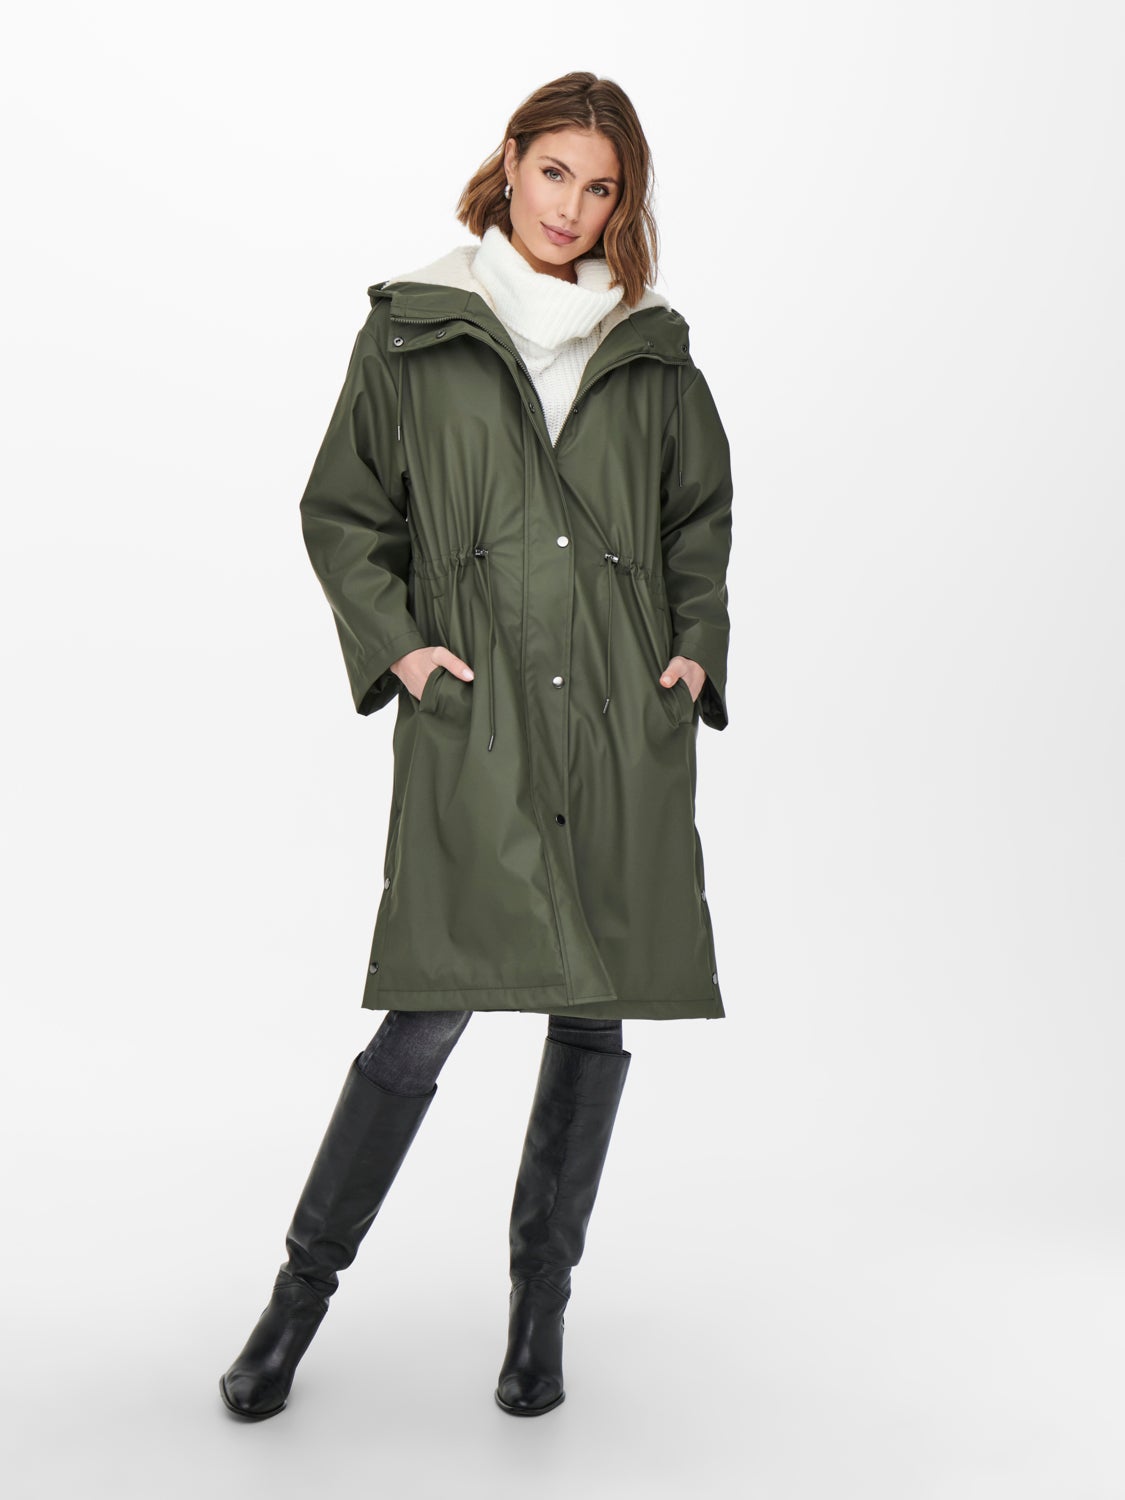 Jaune/vert olive Visiter la boutique OnlyONLY Veste de pluie pour femme Mama longue XL 